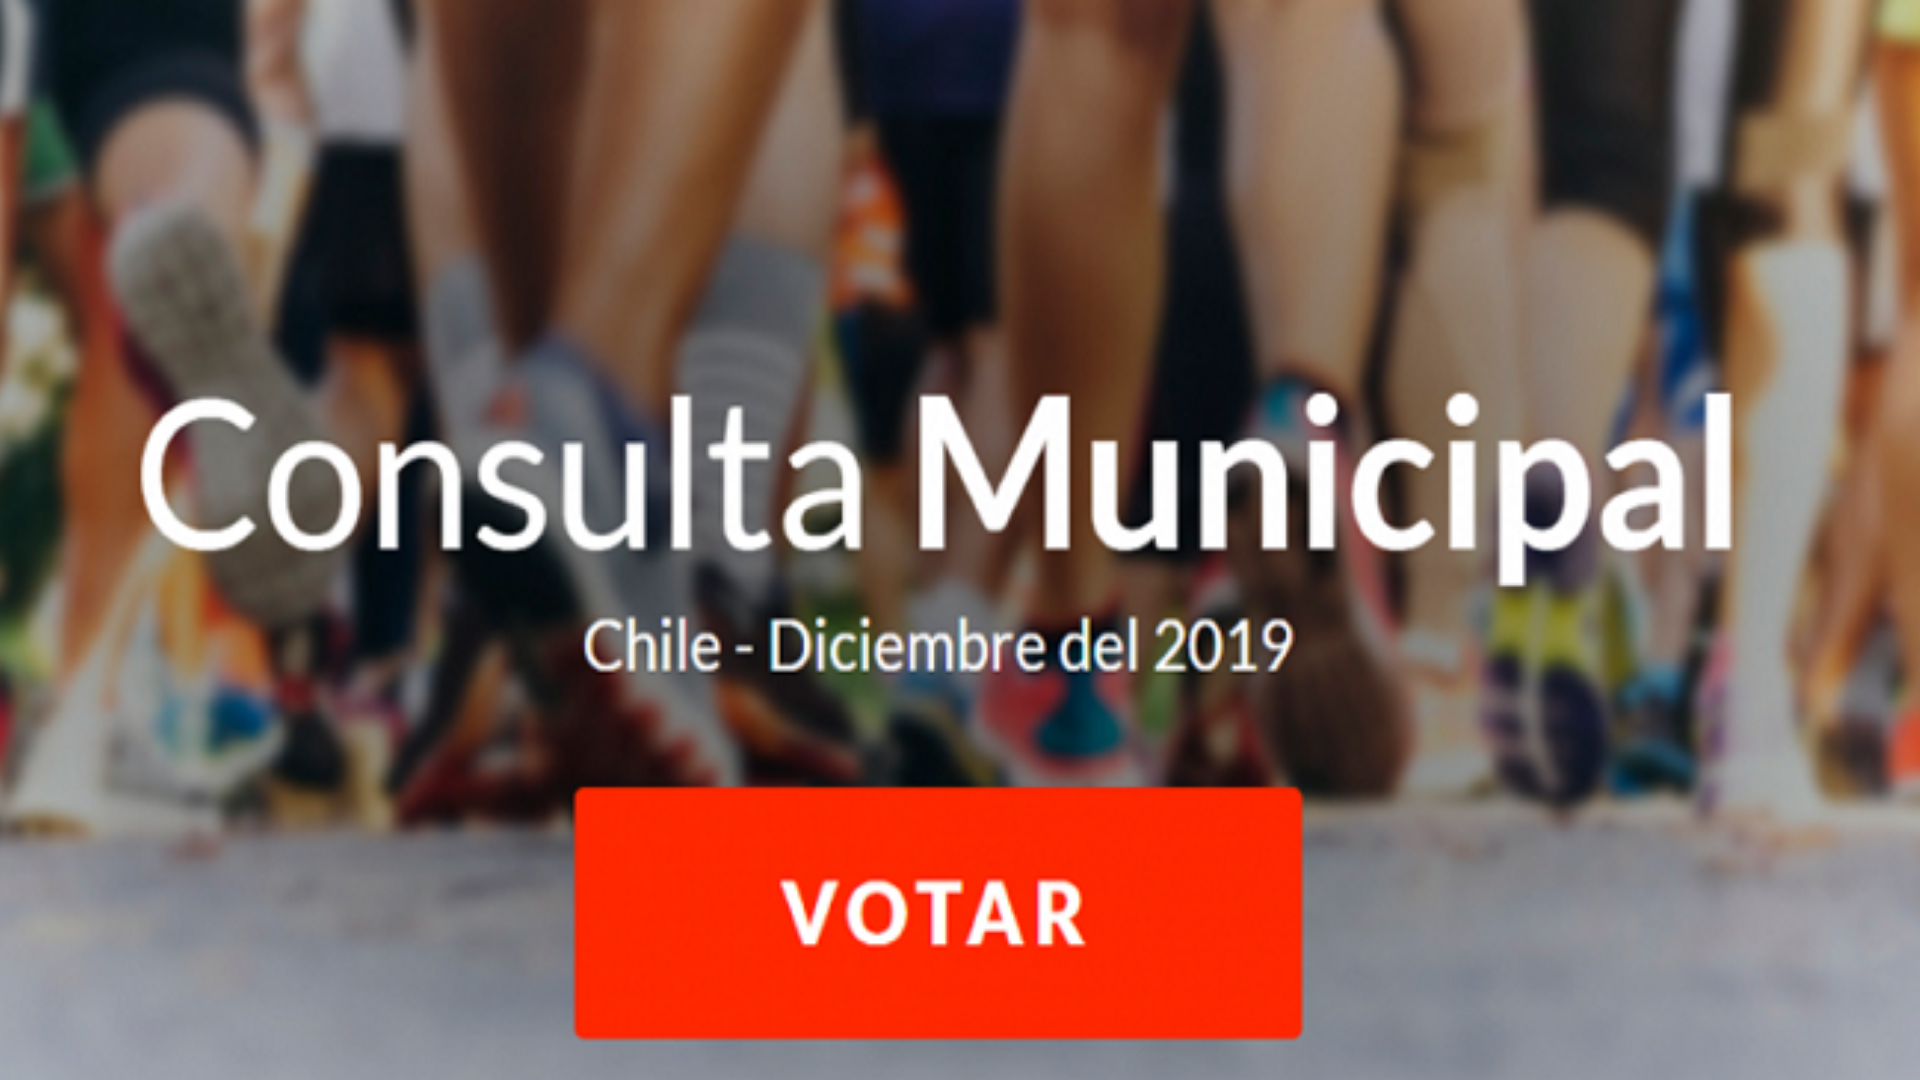 Consulta Municipal Diciembre 2019, Chile